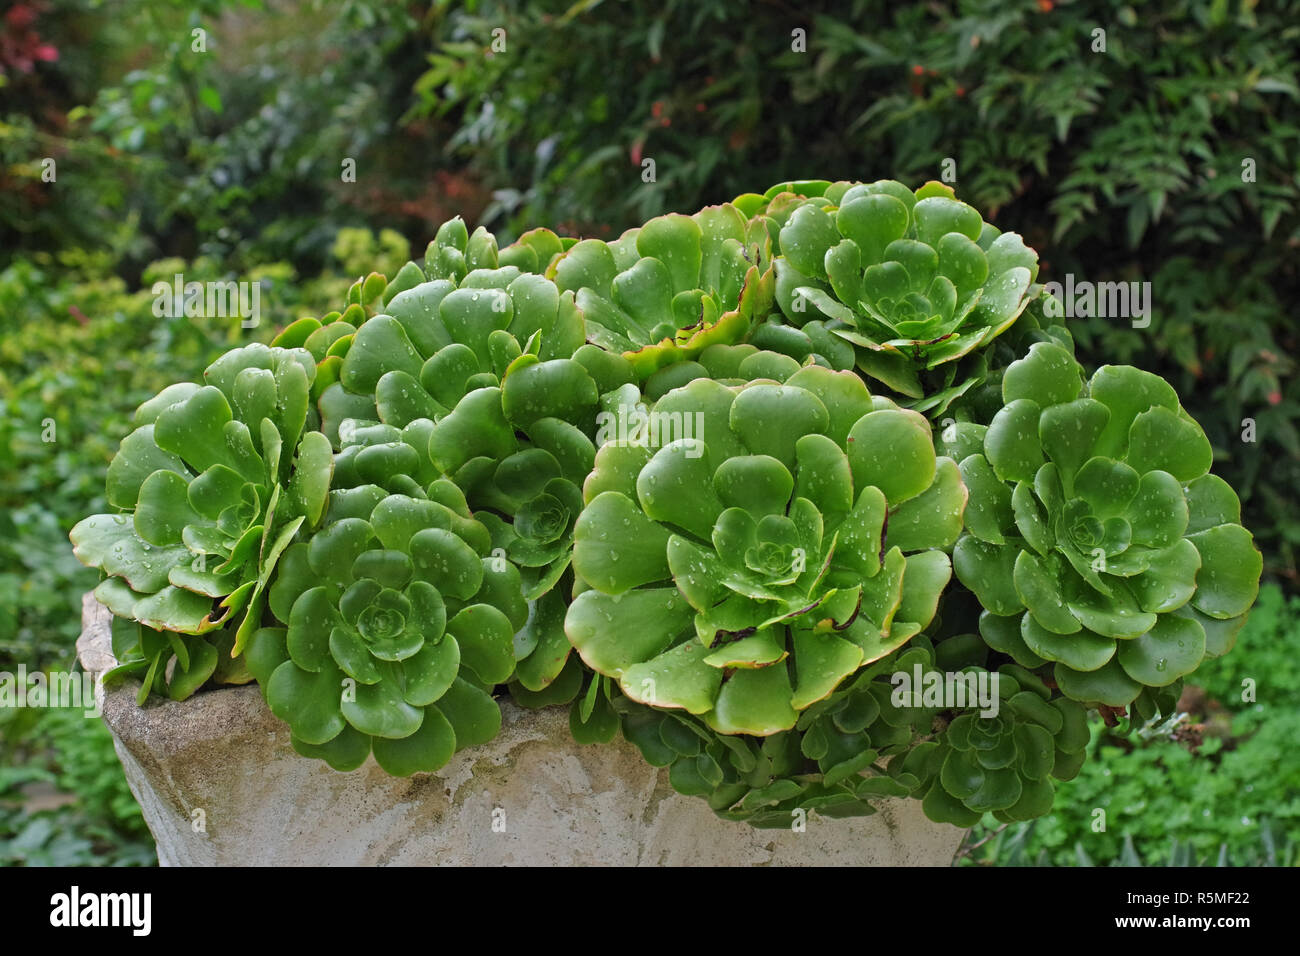 Las plantas suculentas en un jardín (Crassulaceae, quizás Echeveria sp). Foto de stock